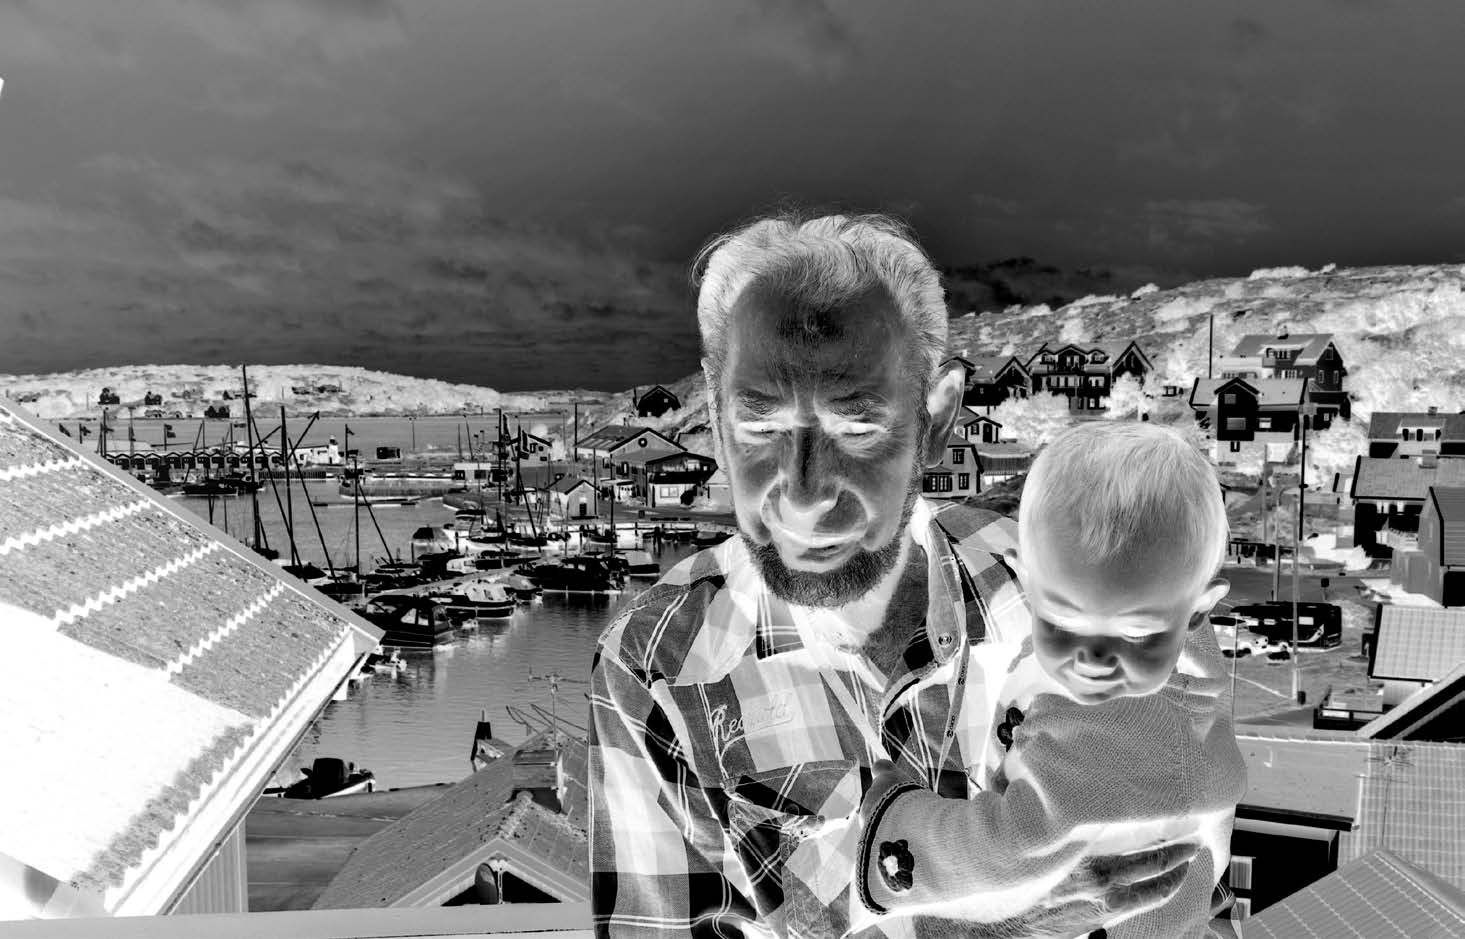 Holmfrid - fiskare, snickare, poet Holmfrid med sitt barnbarnsbarn på balkongen. Holmfrid Johansson är, med sina 92 år, en av de gamla profilerna i Björkö Missionskyrka.